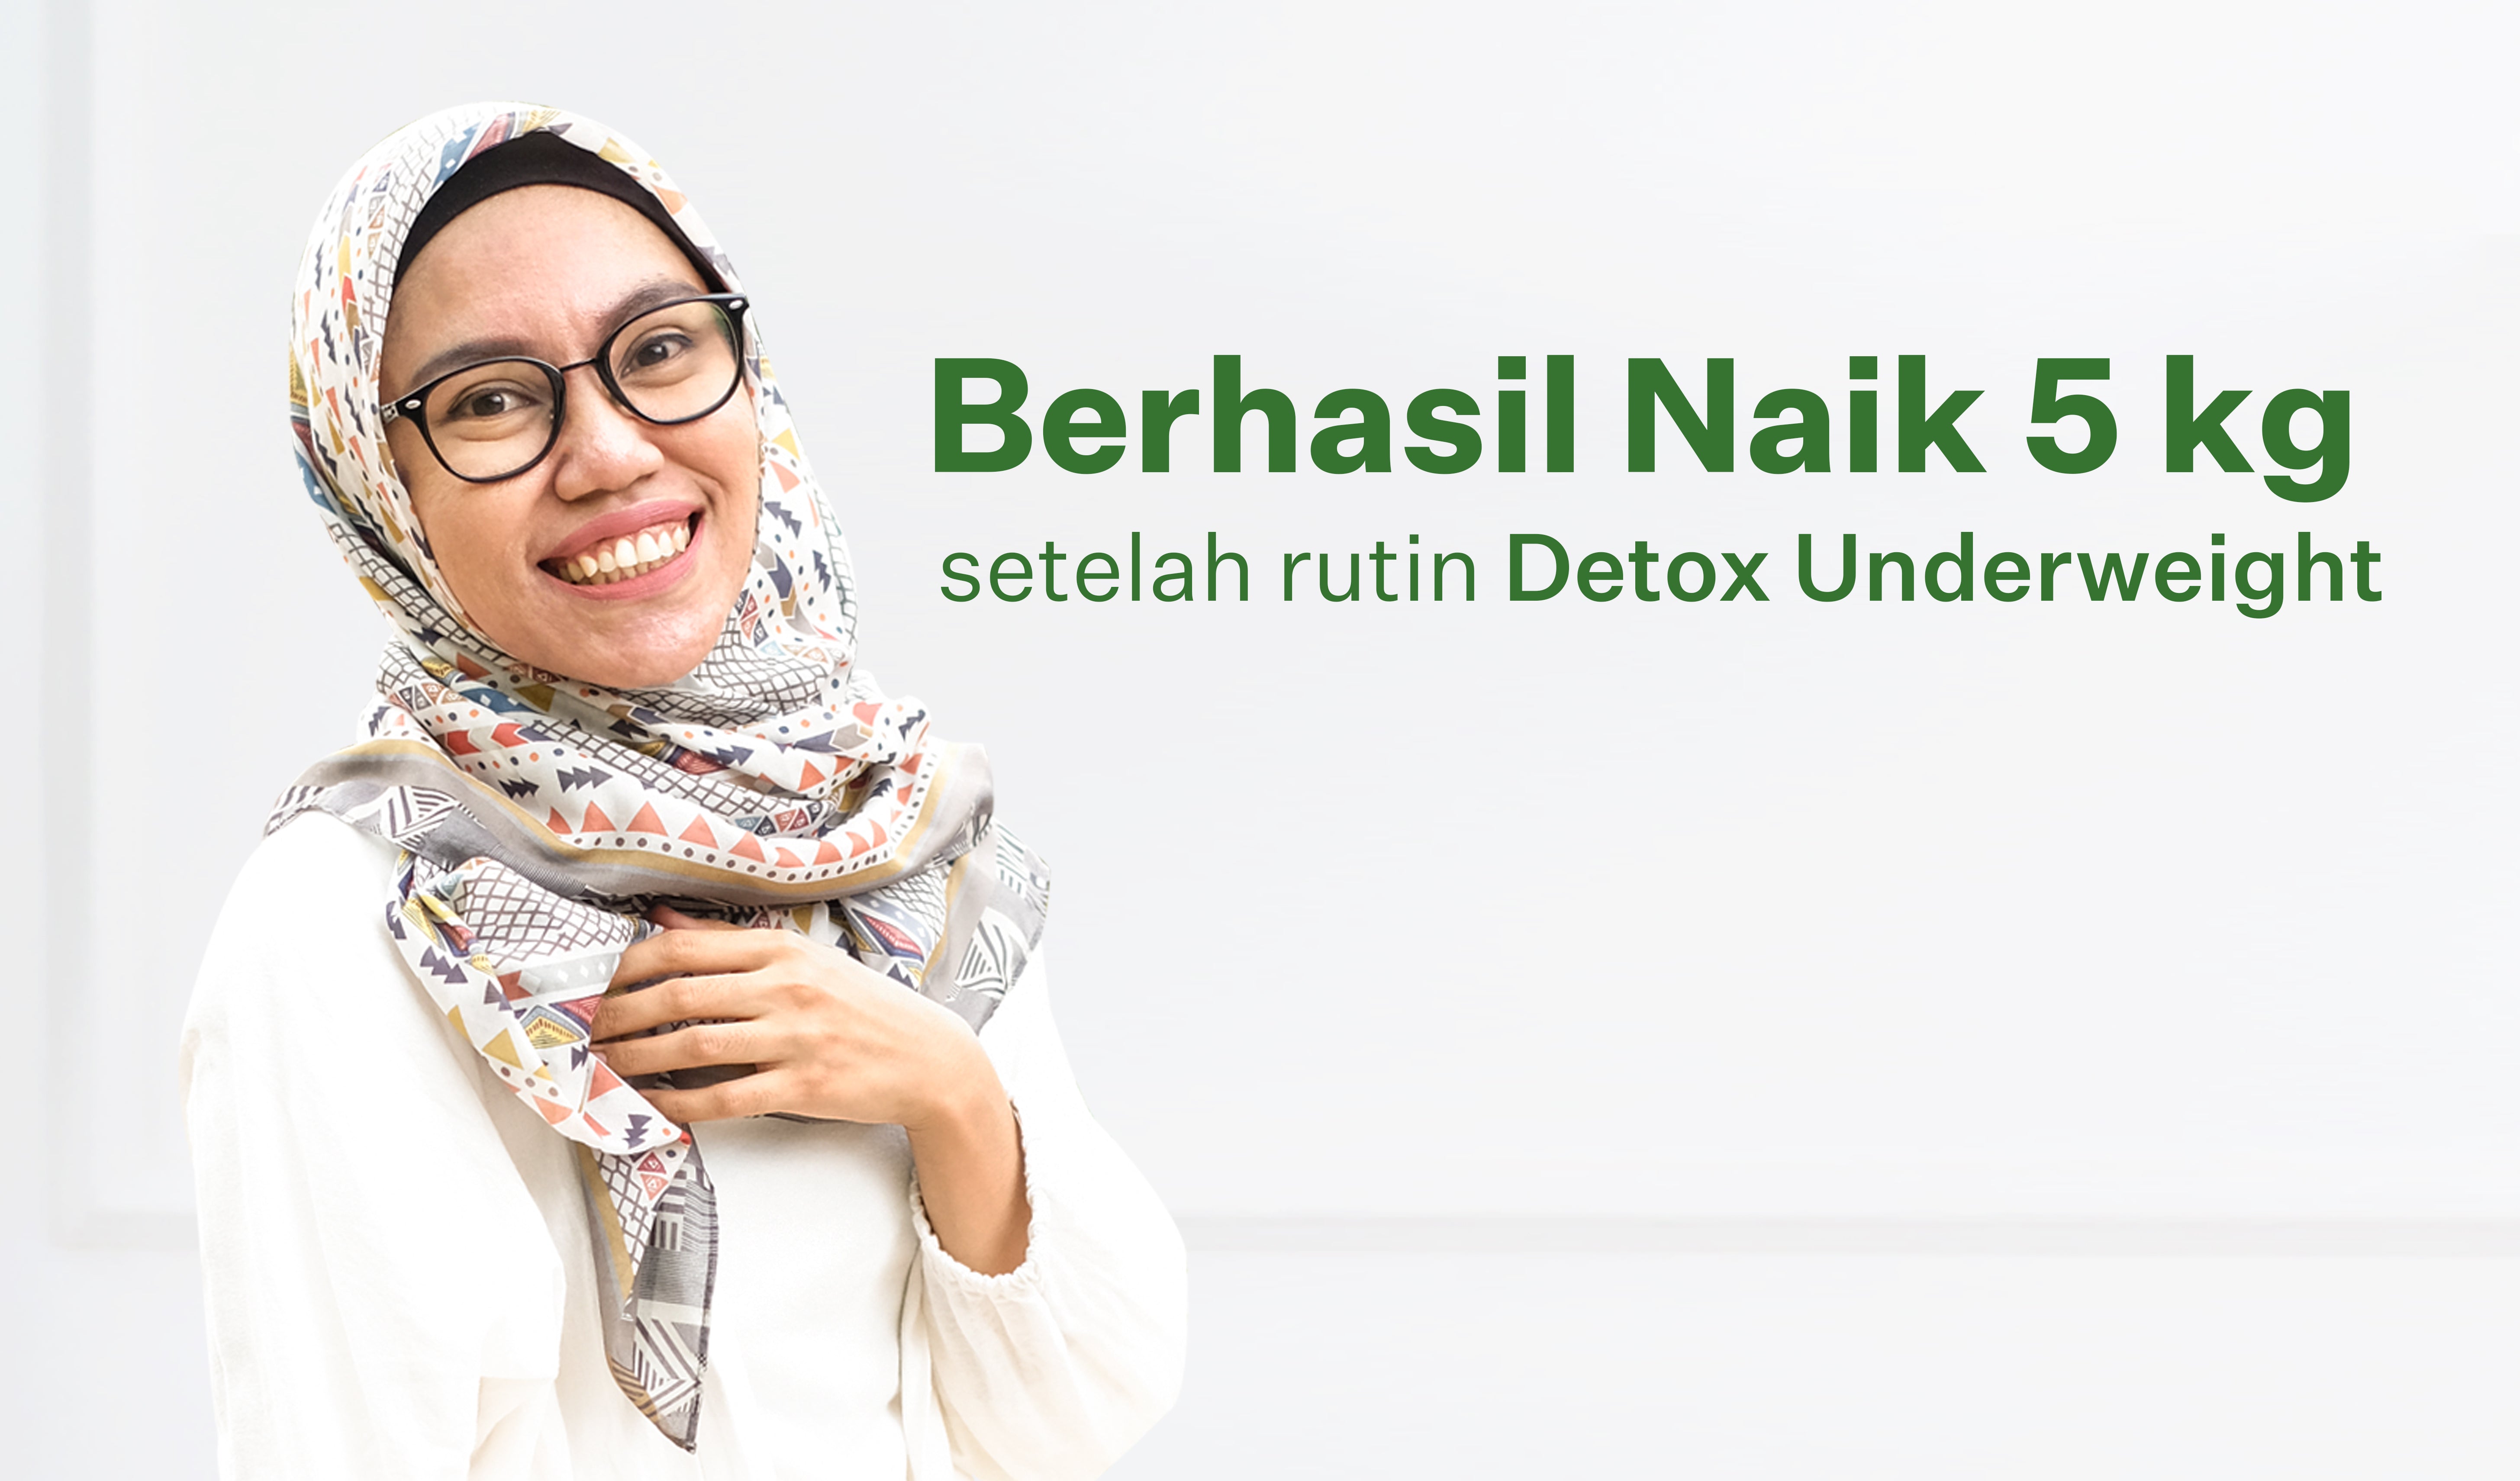 Amalia, Berhasil Naik 5kg Setelah Detox Underweight